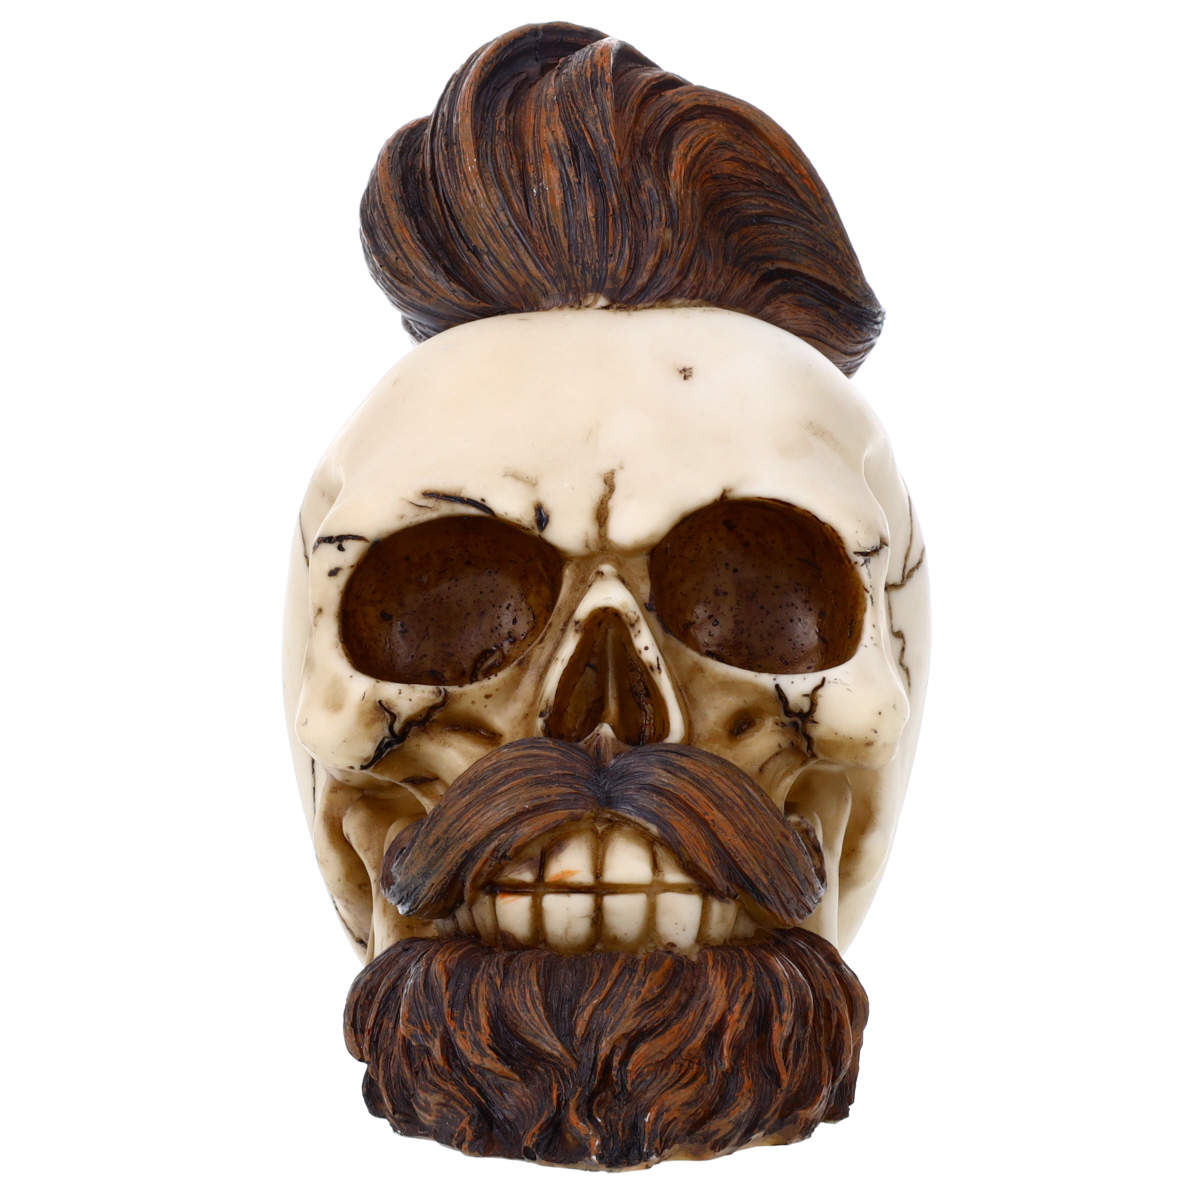 Beard Skull